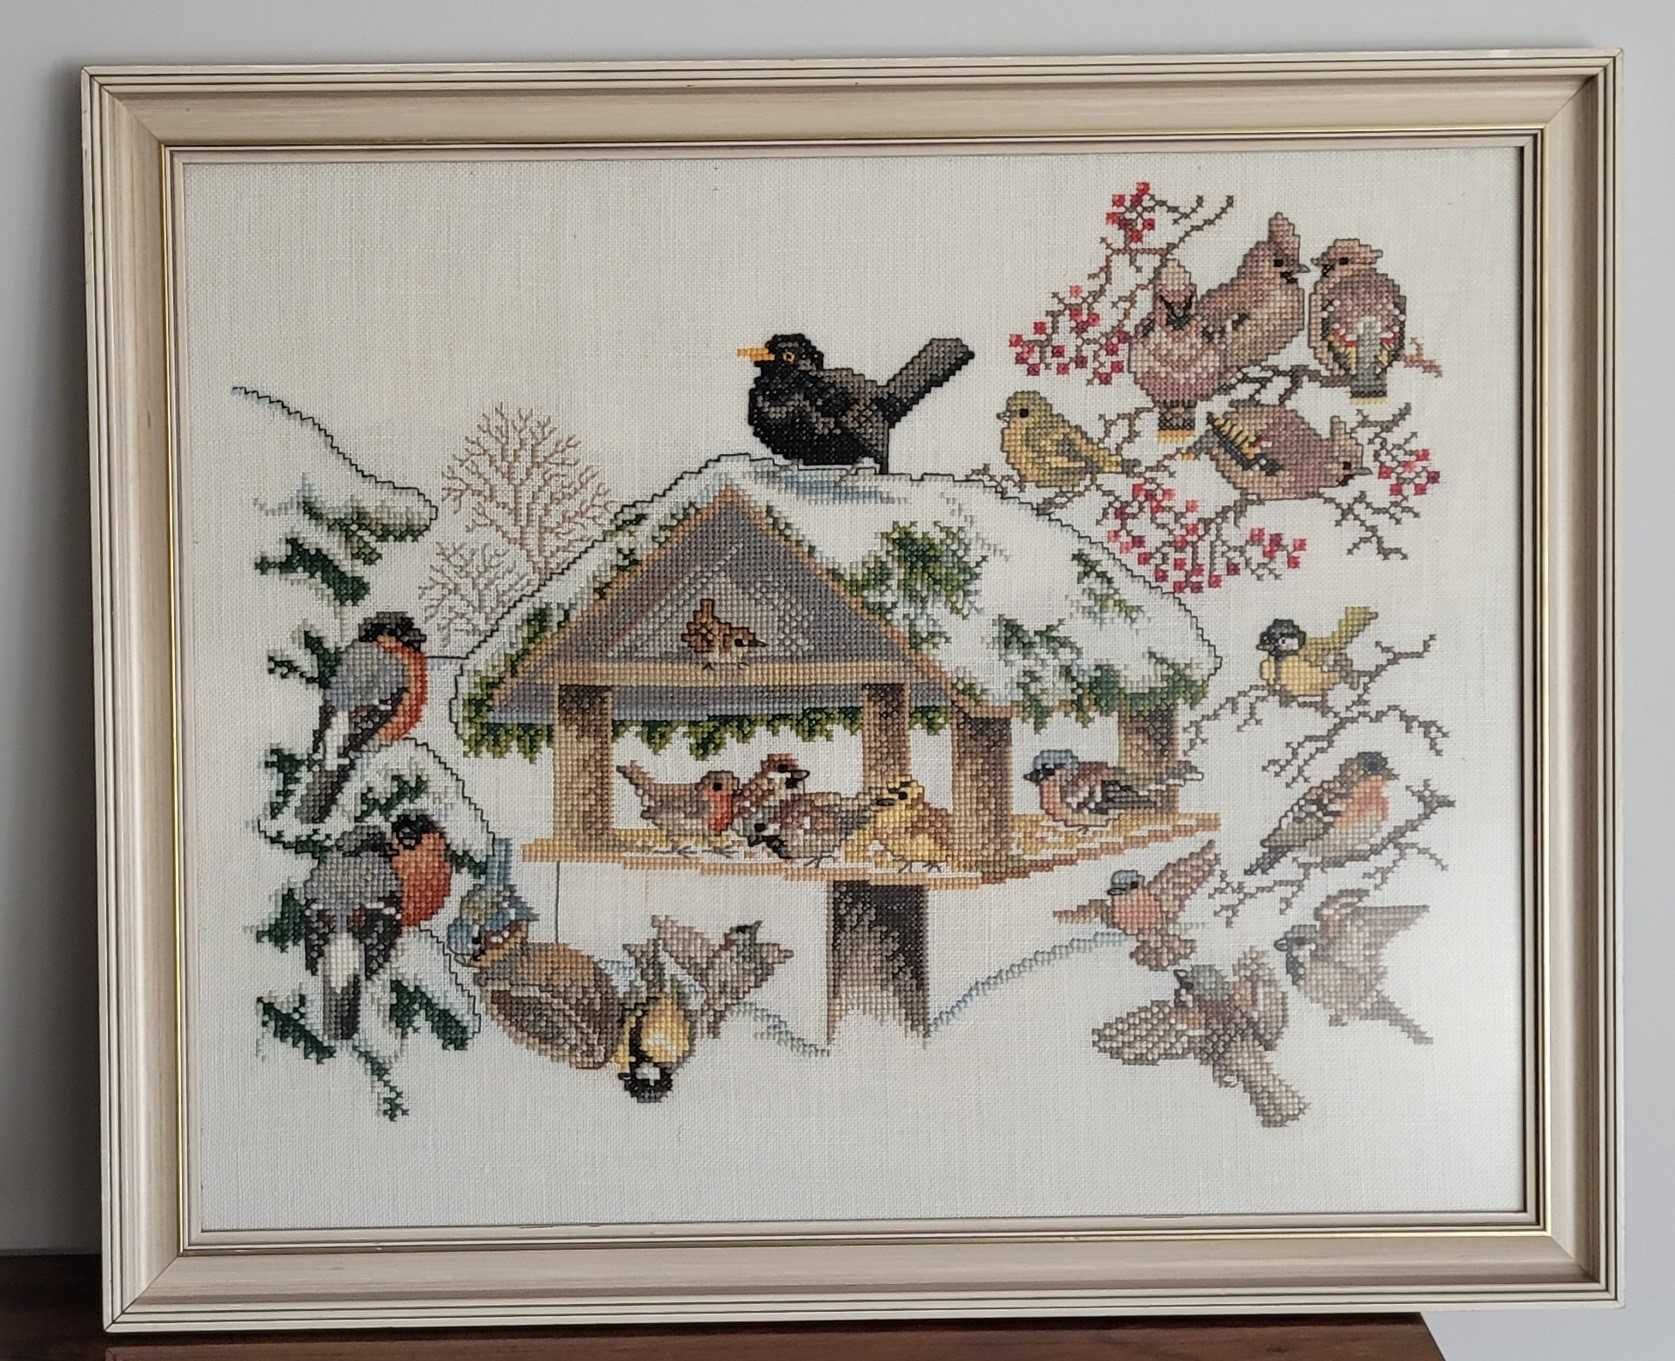 Obraz wyszywany Kolorowe ptaki w zimowej scenerii przy karmniku